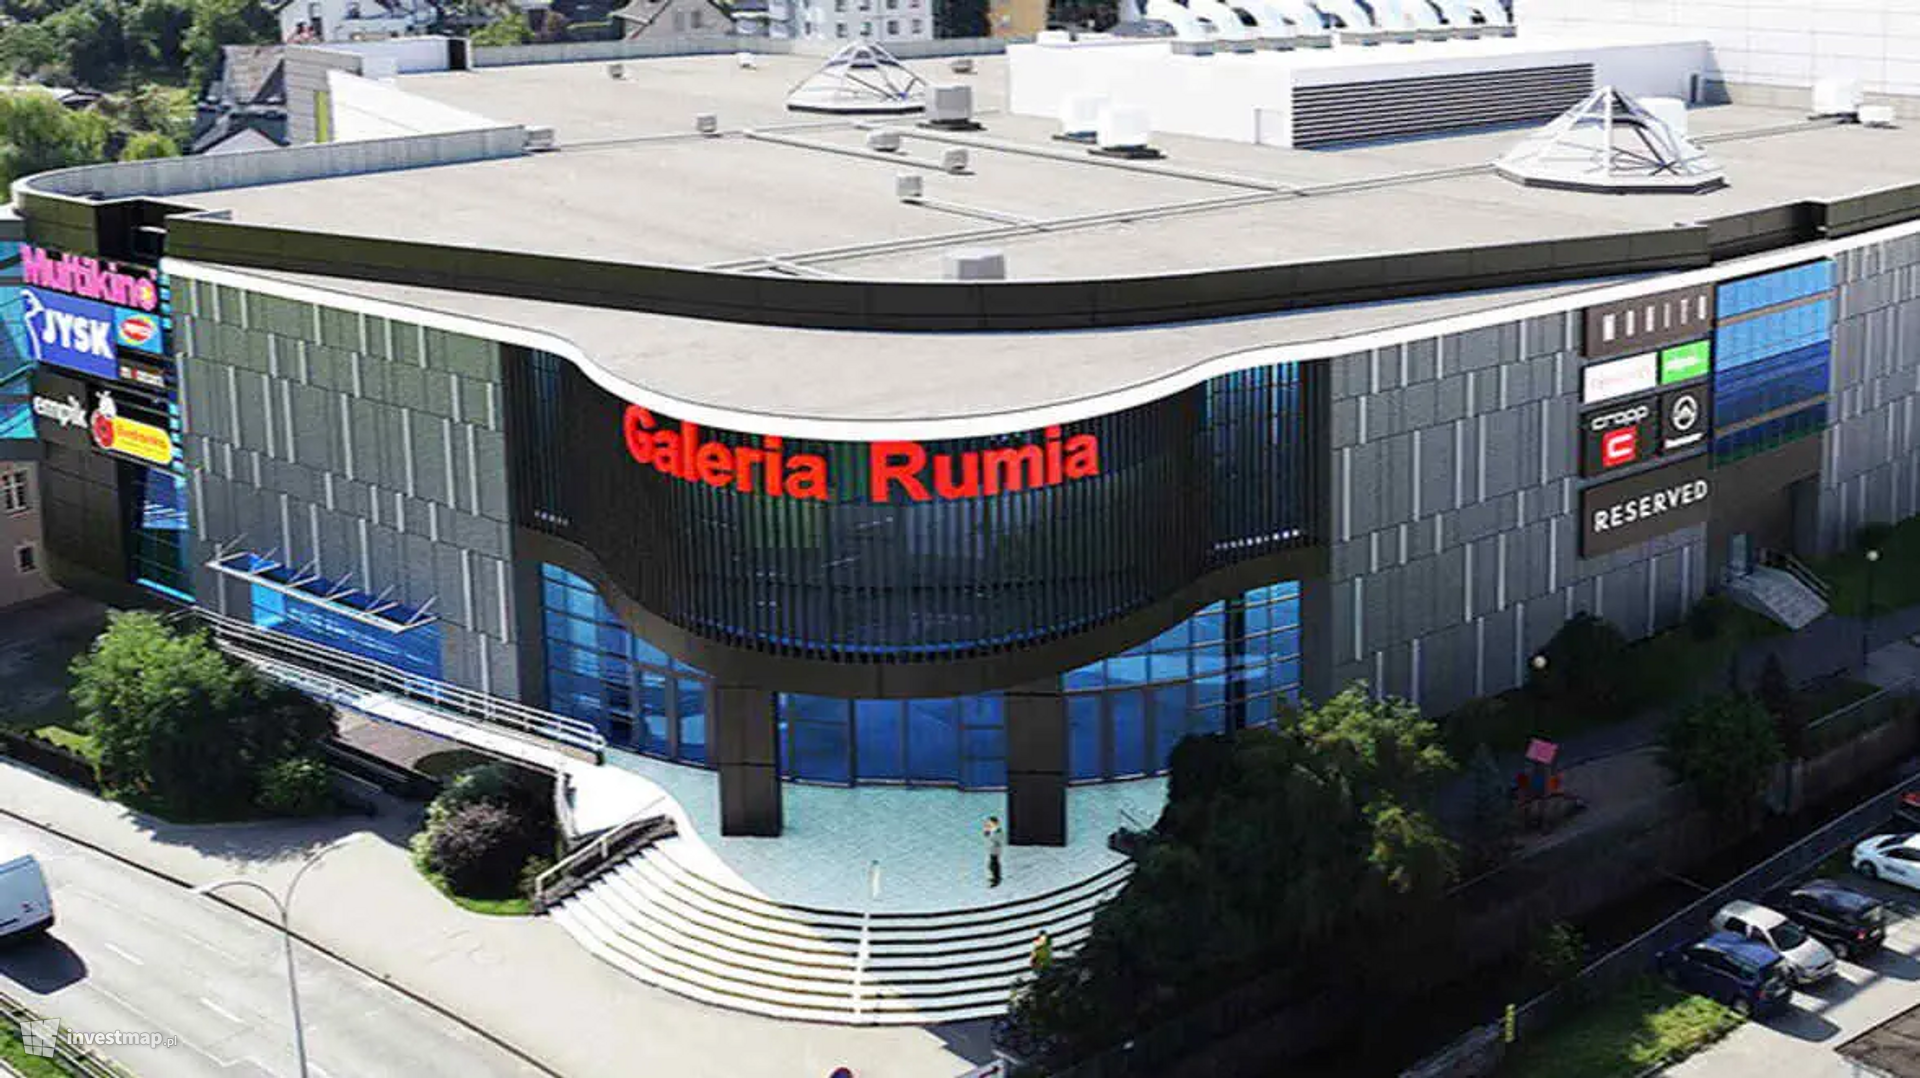 Galeria Rumia